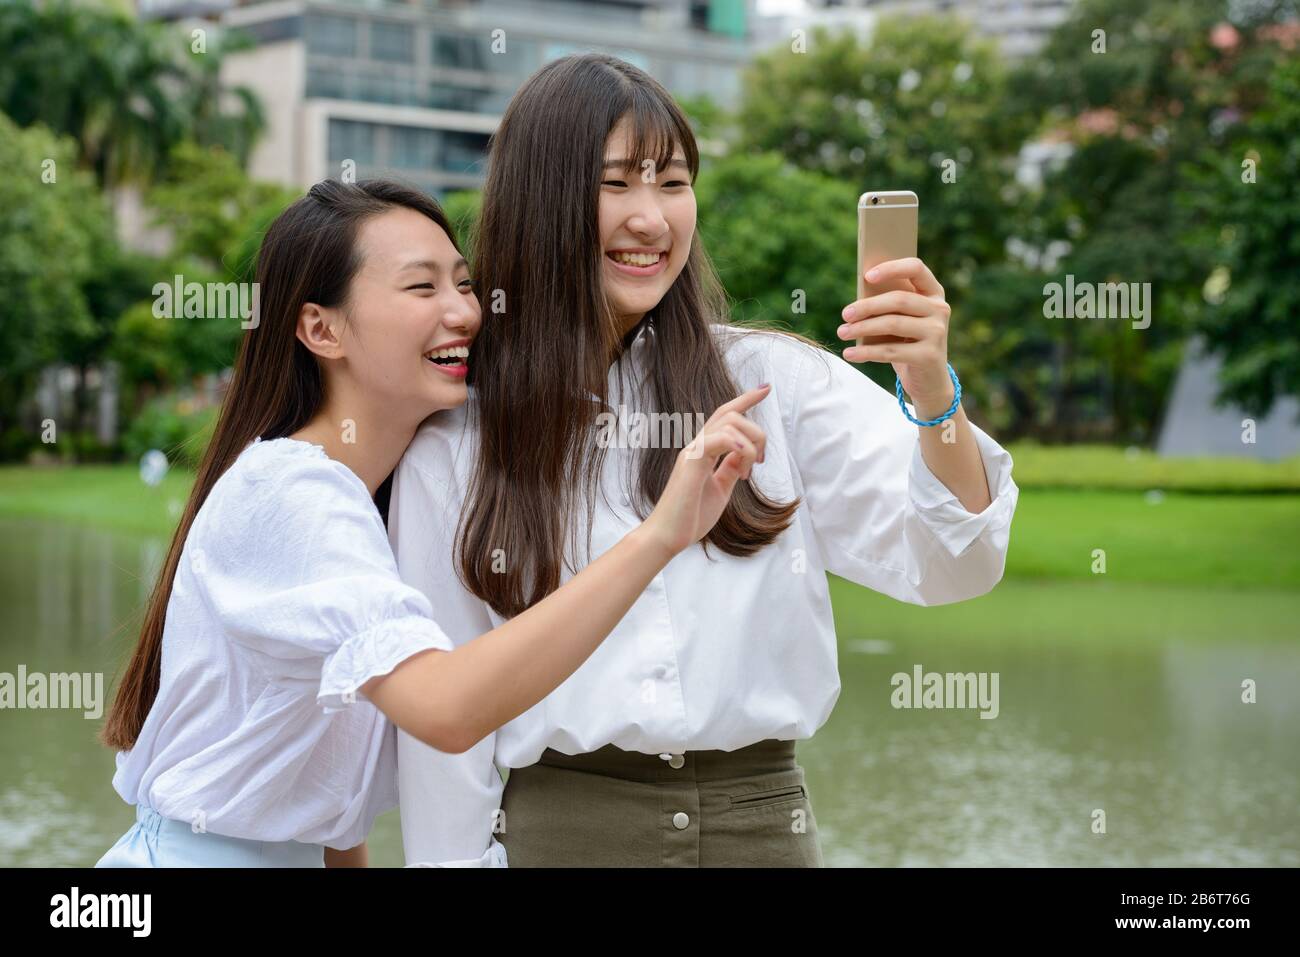 Zwei glückliche junge, schöne asiatische Teenager-Mädchen, die selfie im Park zusammen nehmen Stockfoto